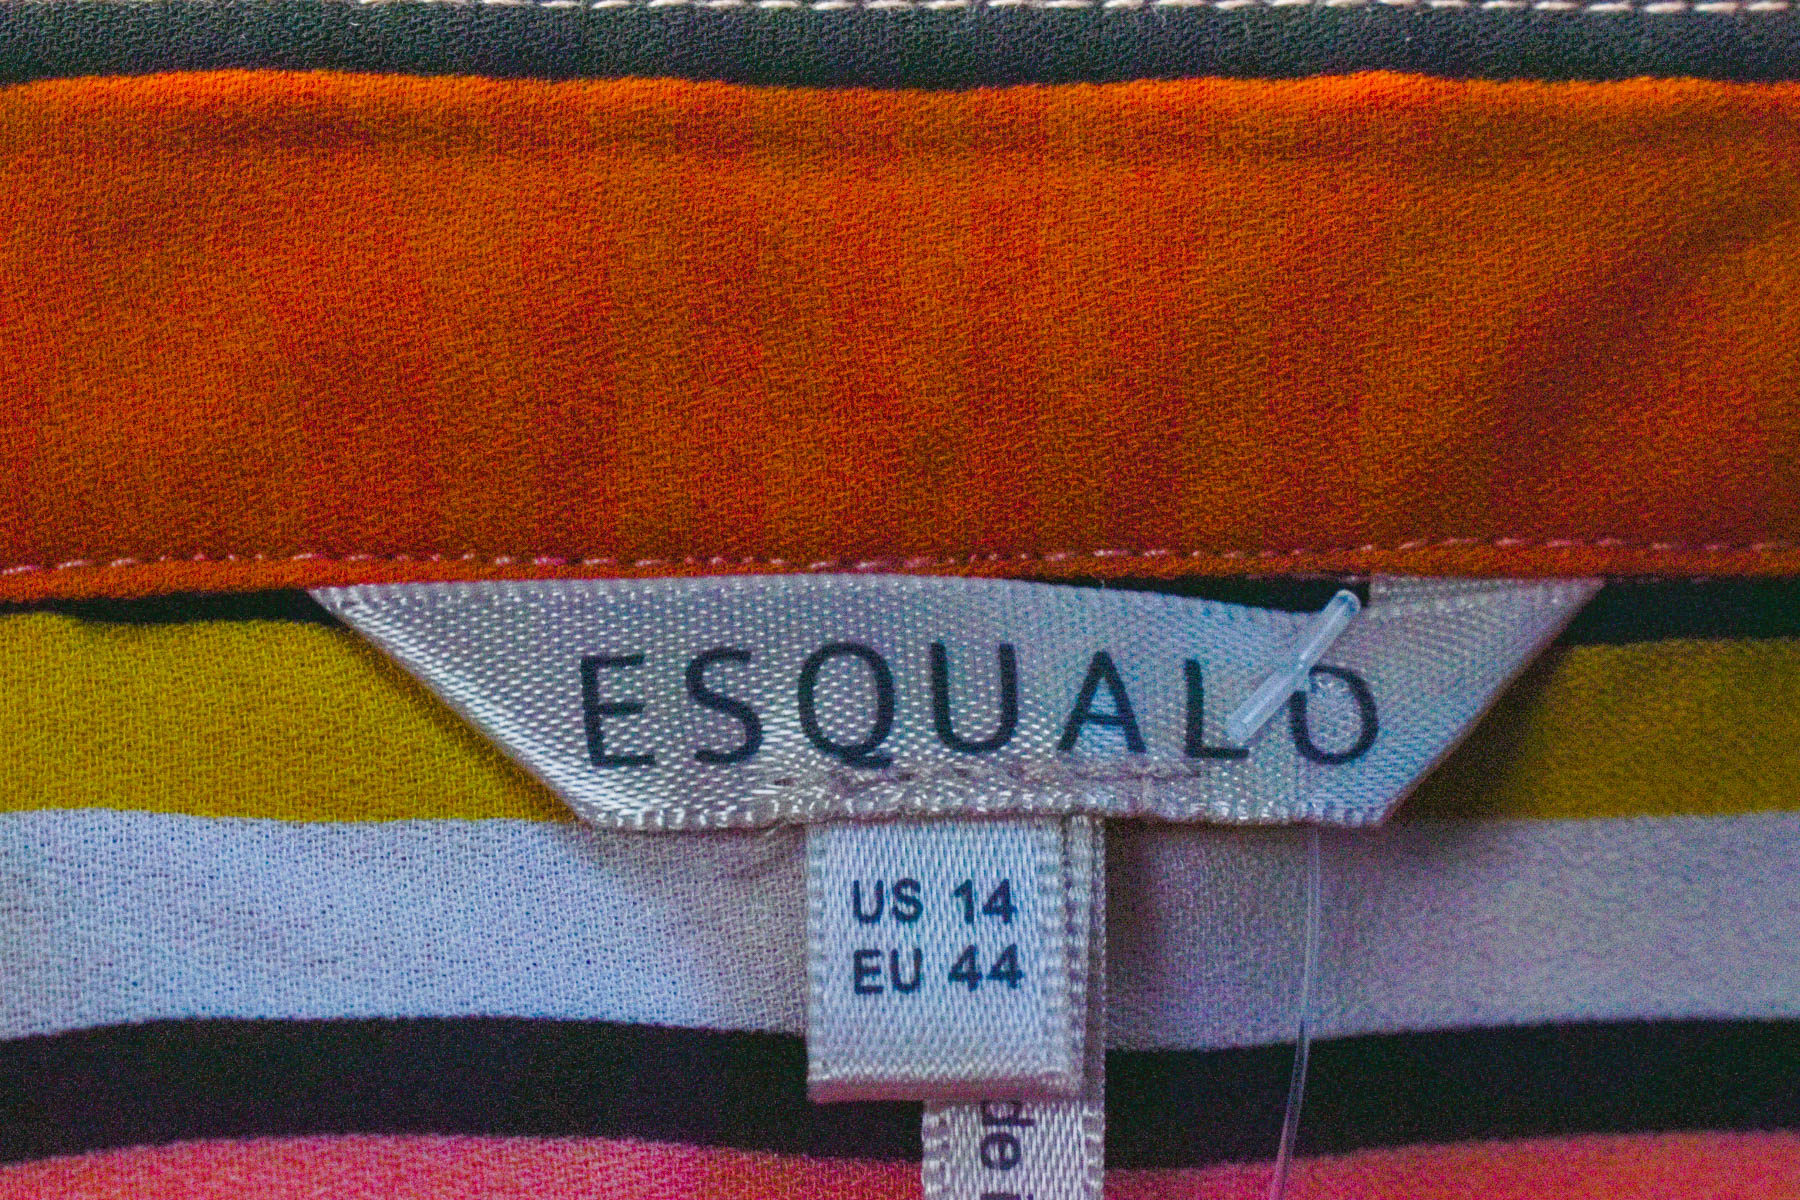 Γυναικείо πουκάμισο - ESQUALO - 2